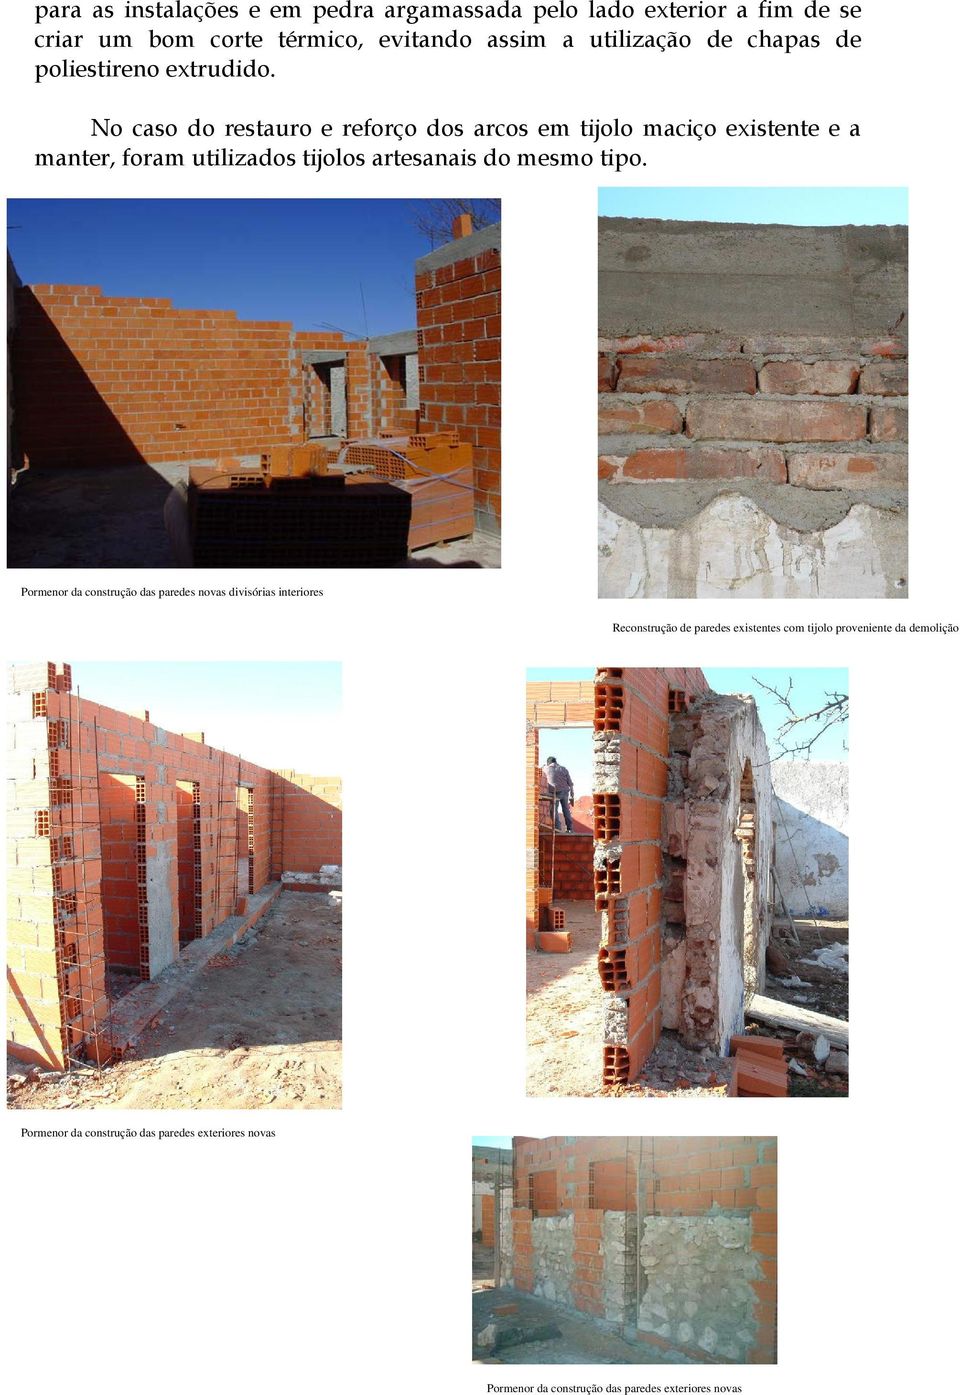 No caso do restauro e reforço dos arcos em tijolo maciço existente e a manter, foram utilizados tijolos artesanais do mesmo tipo.